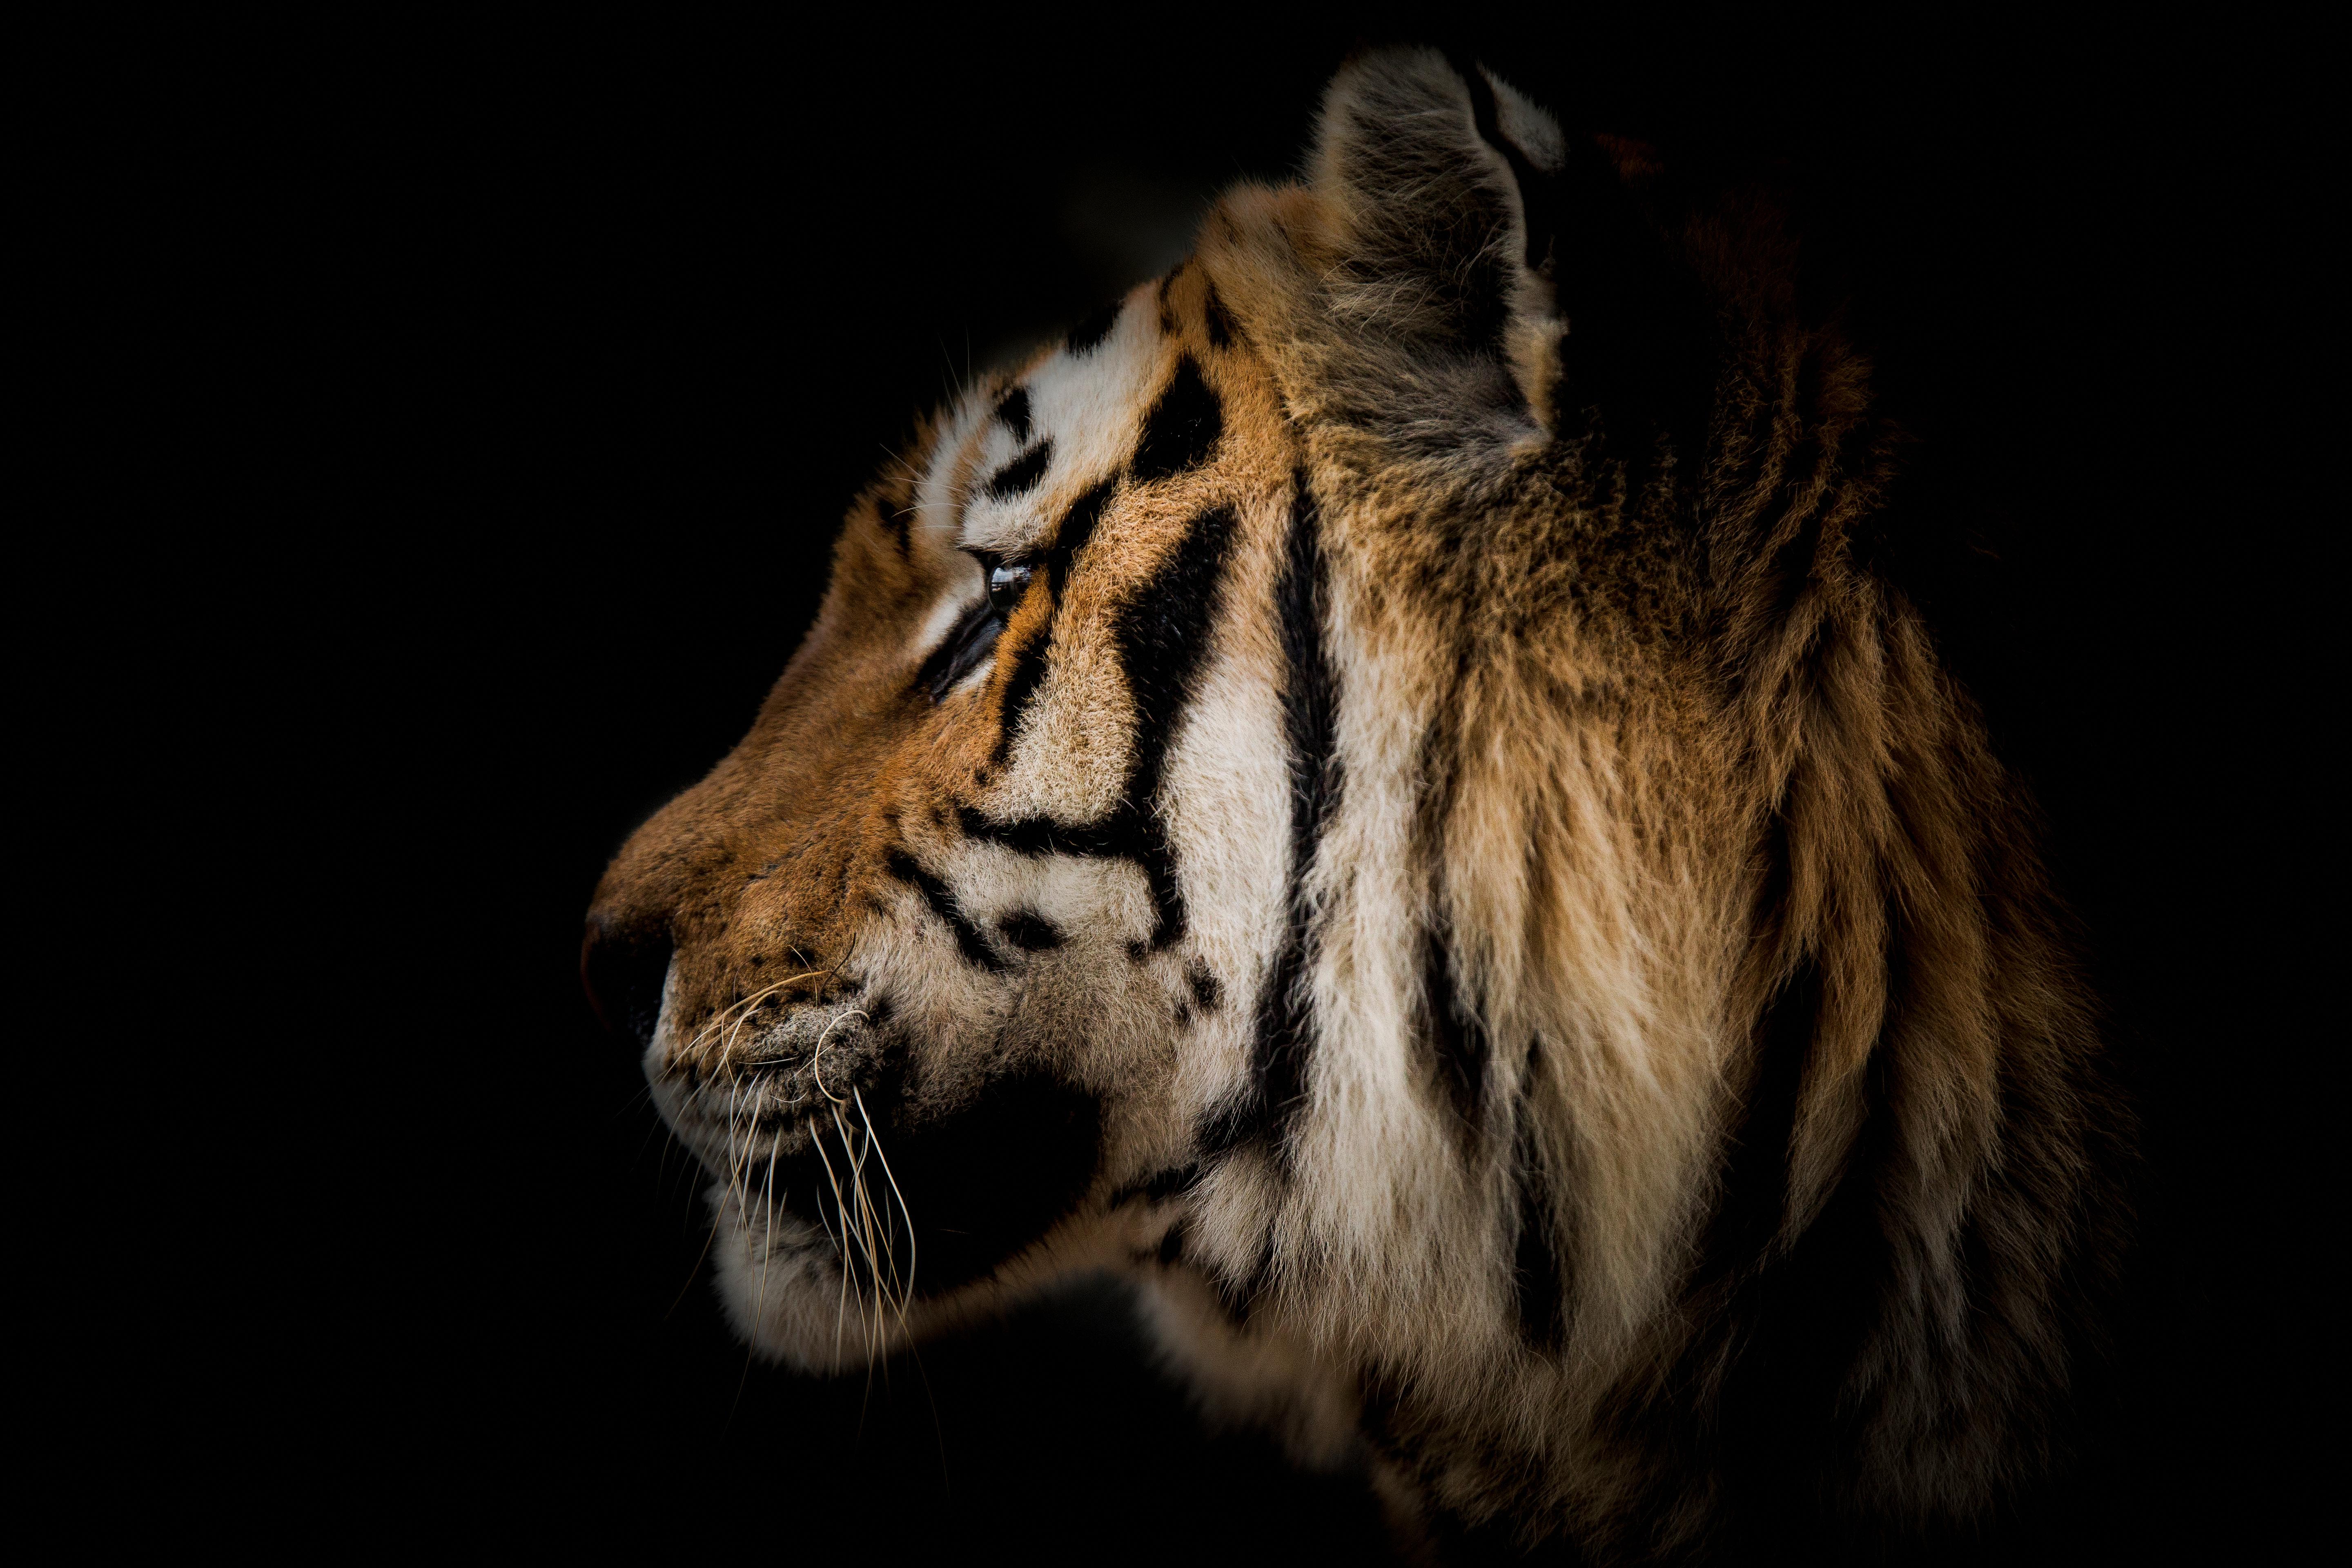 Black and White Photograph Shane Russeck - "Tiger Portrait" - Impression de photographie de l'art de la faune, 36x24